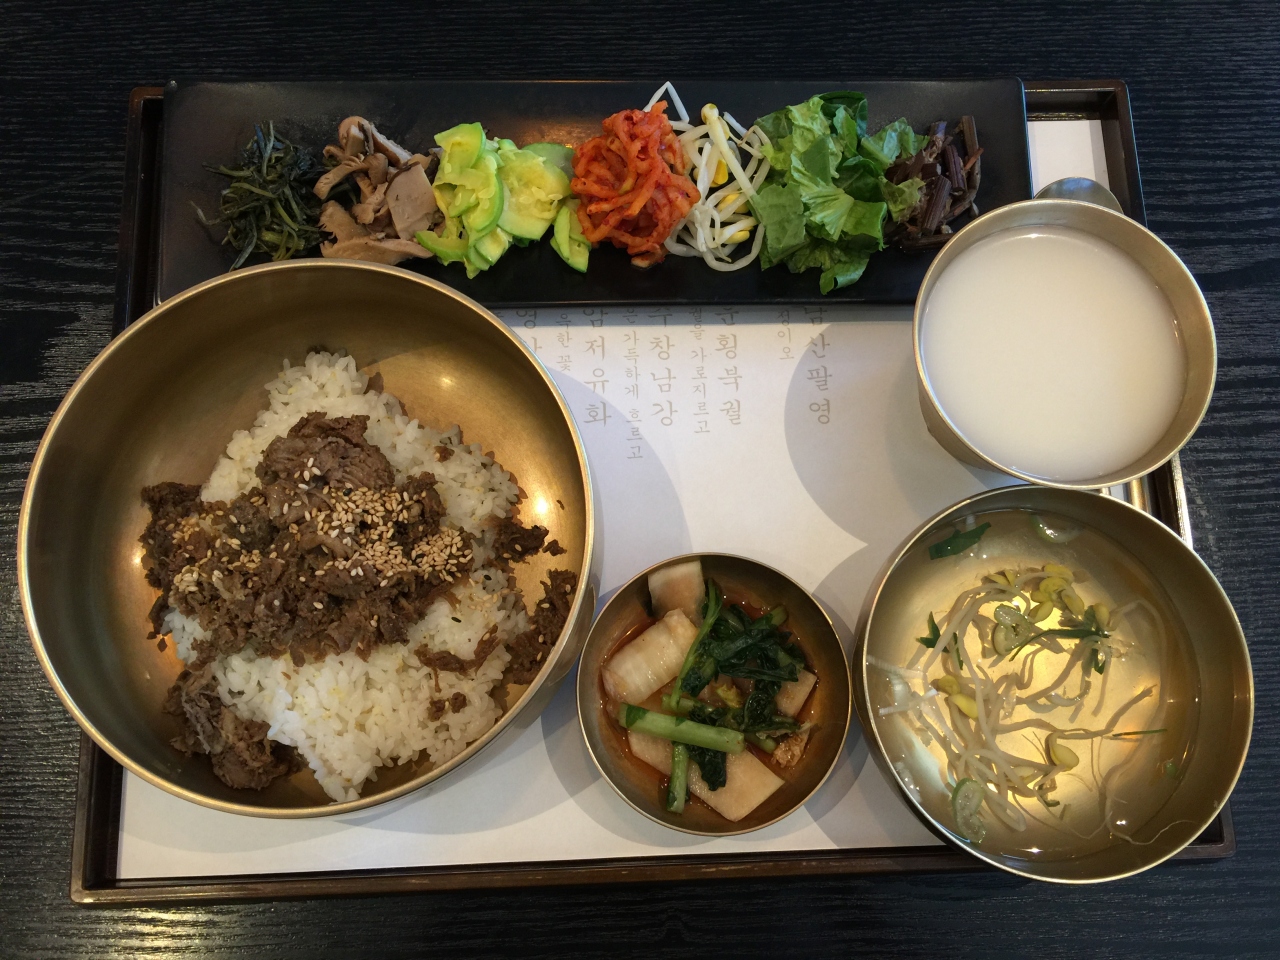 ソウル一人旅 食べたいものを食べる その ソウル 韓国 の旅行記 ブログ By どこいこかさん フォートラベル